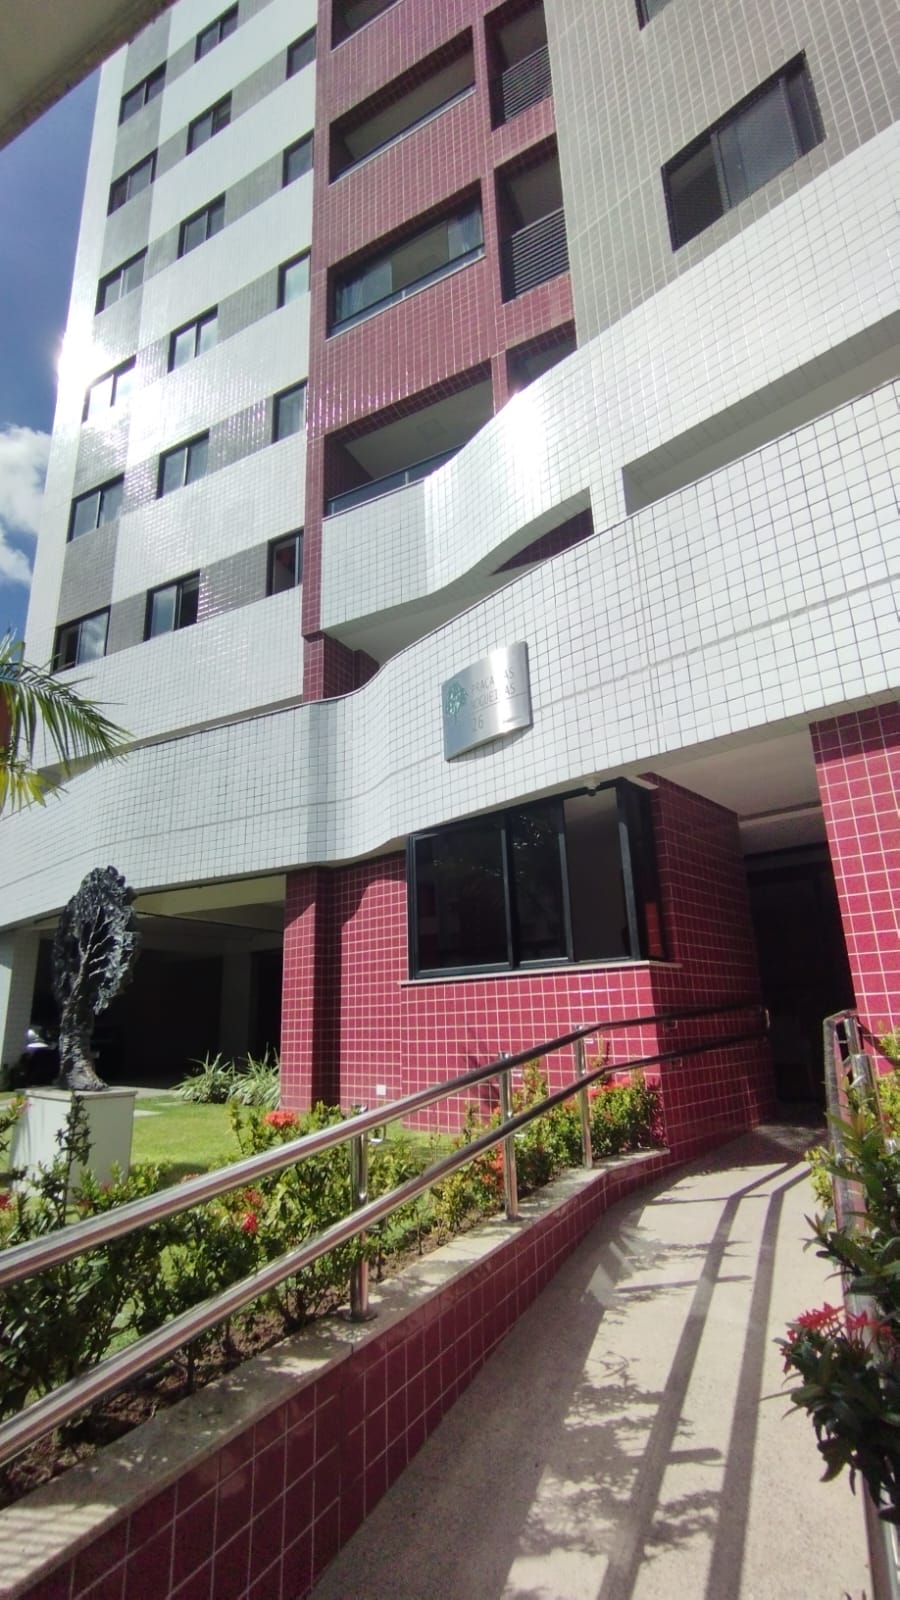 Condomínio Condominio Praça das Nogueiras - Várzea - Recife - PE